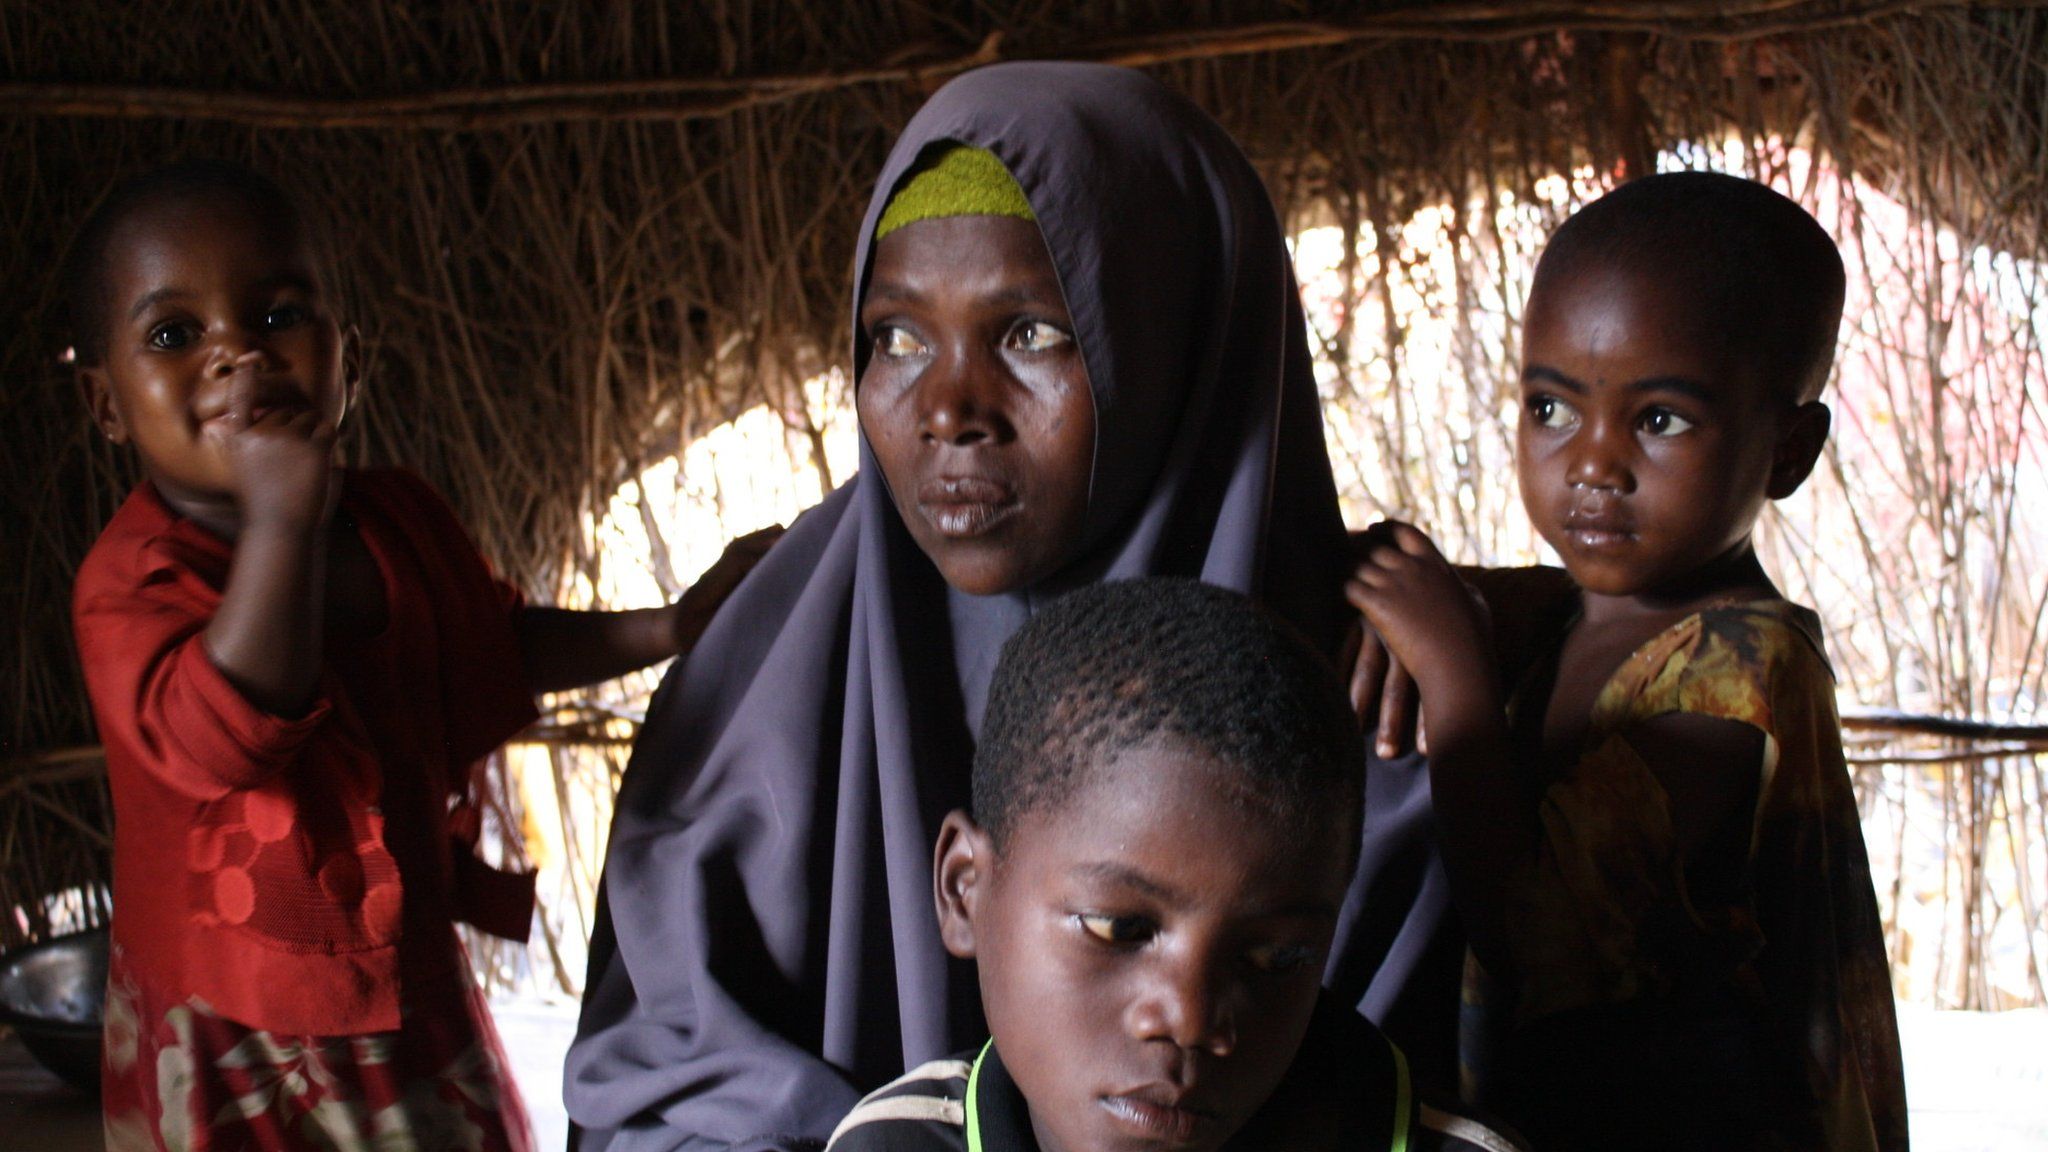 Fatima with her children in Somalia